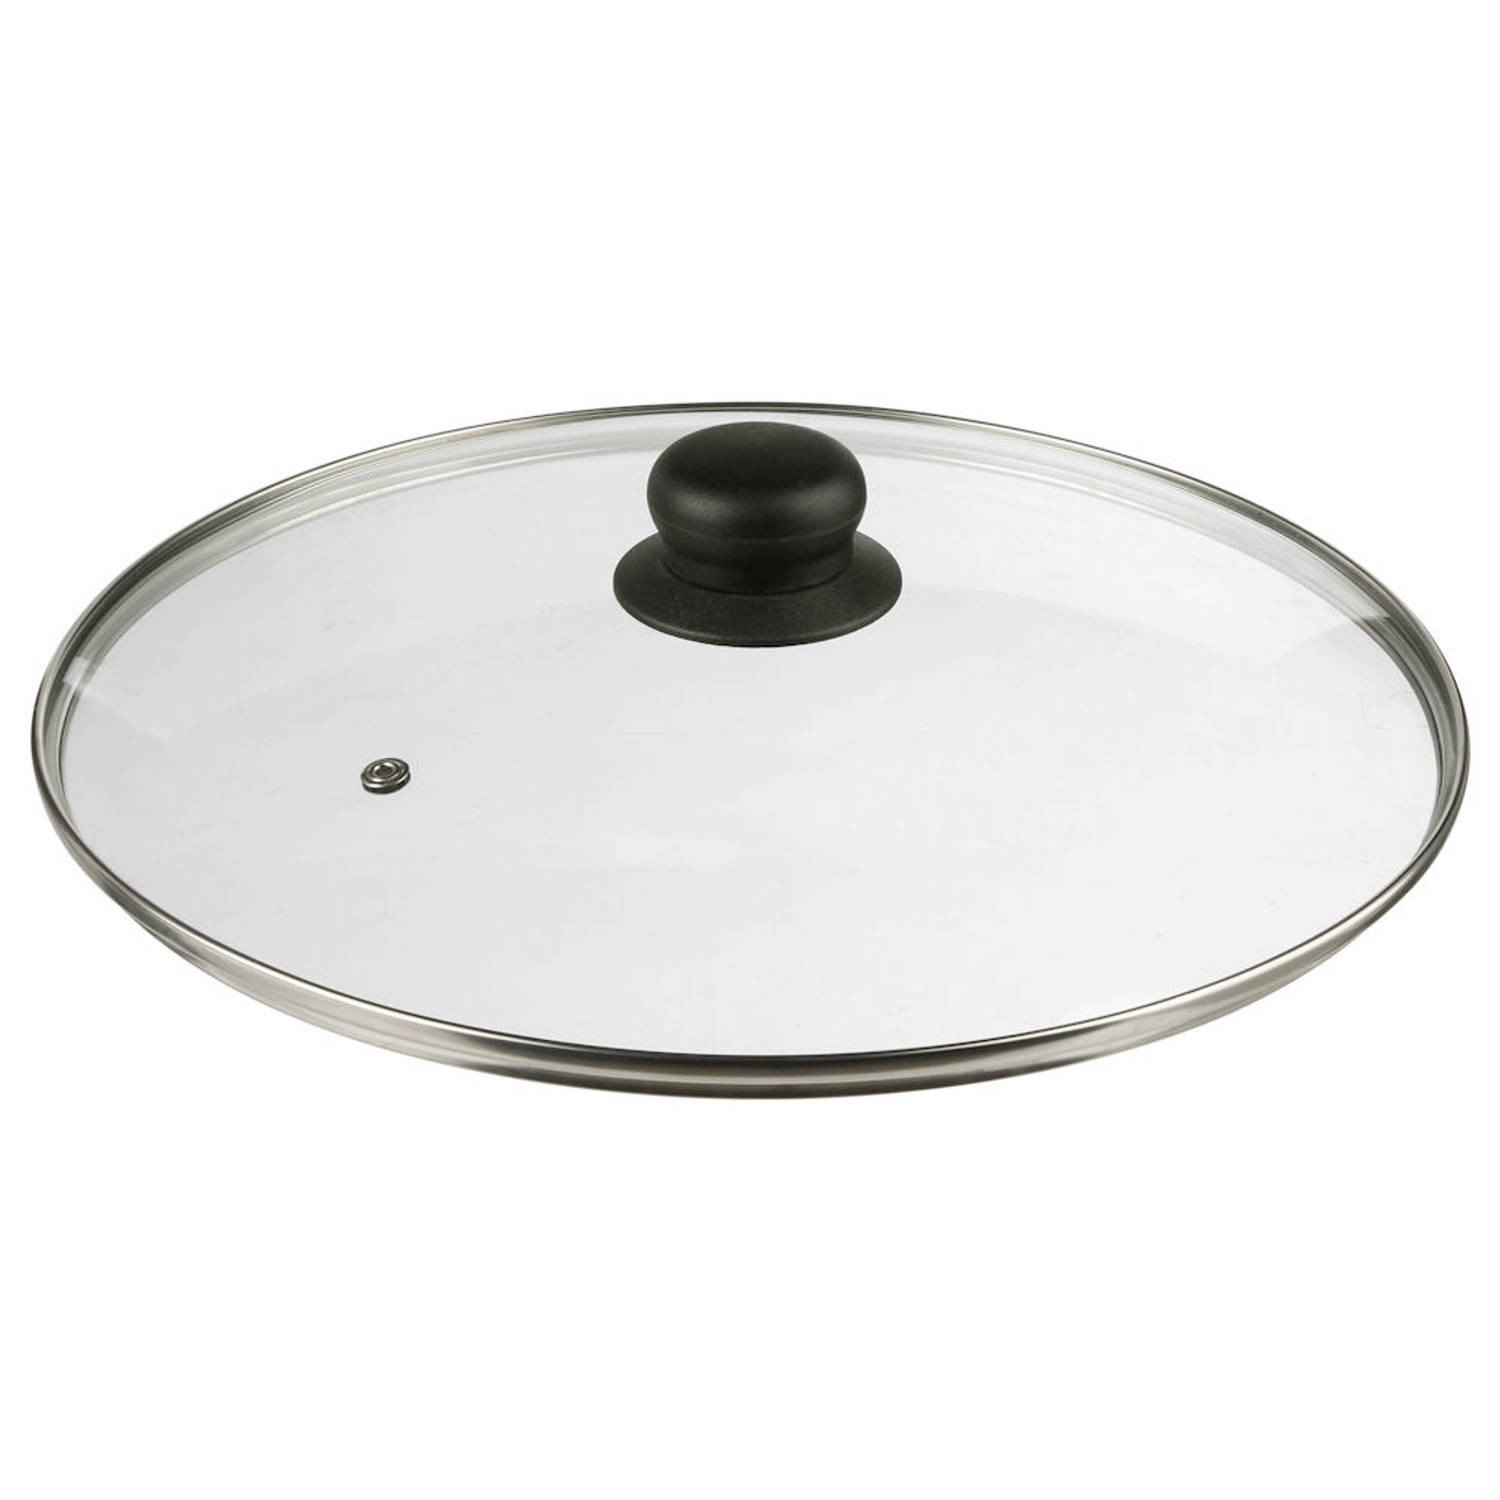 Decopatent® Universele Glazen Pan deksel - Ø28 cm - Ronde Pandeksel Glas met stoomgaatje - Transparant - Voor pannen van 28 Cm